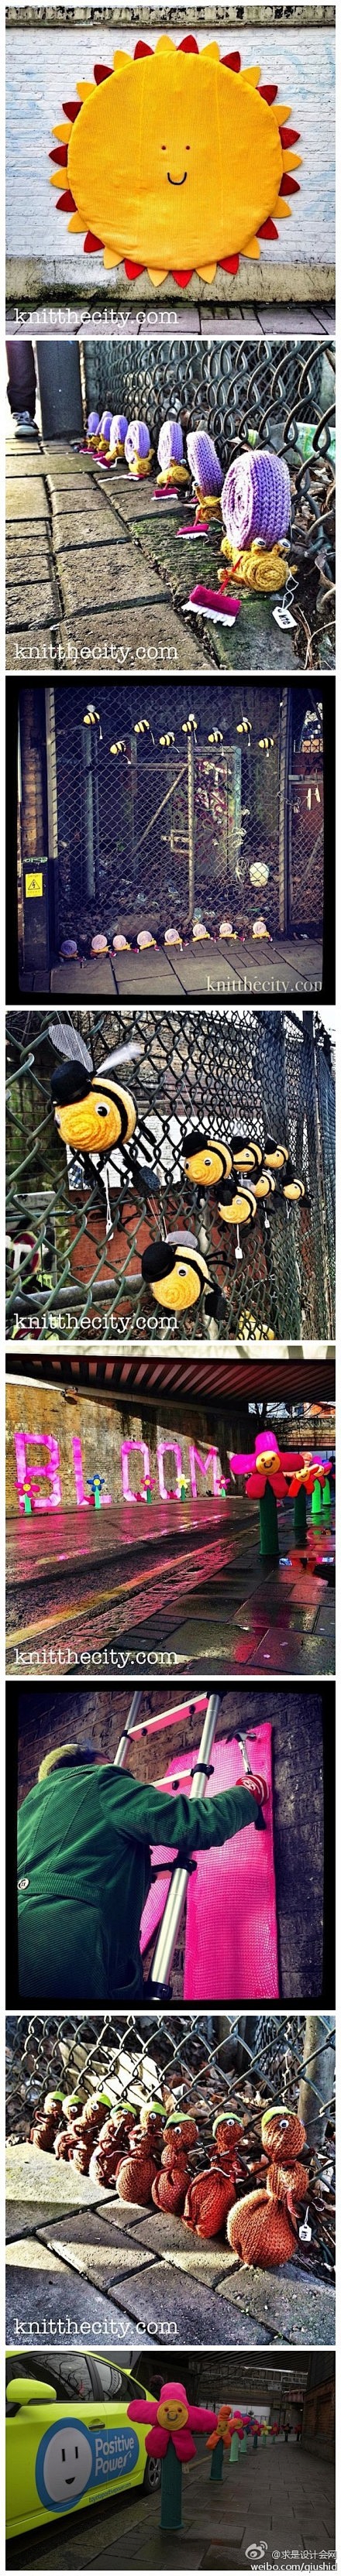 缤纷逗趣的伦敦街头针织涂鸦艺术，来自Kn...